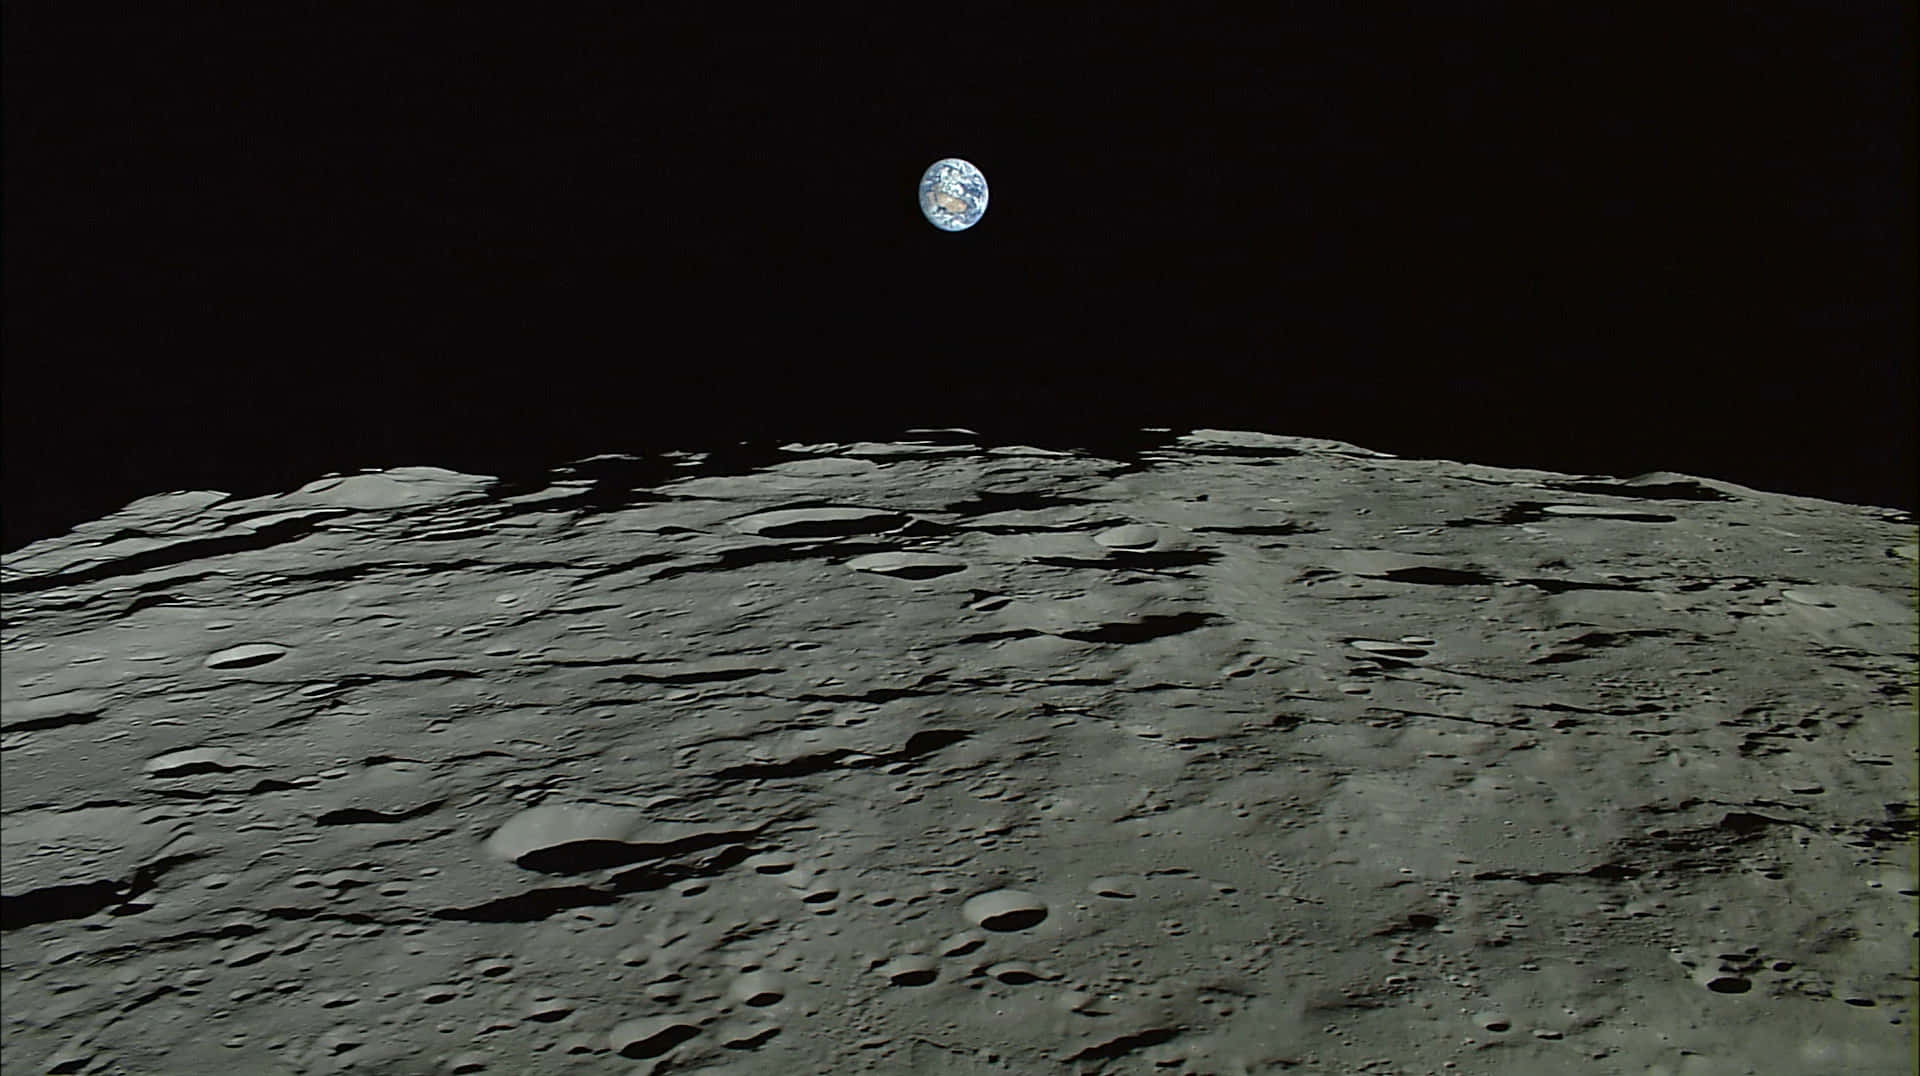 Imagende La Superficie De Cráteres Sin Vida En La Luna.